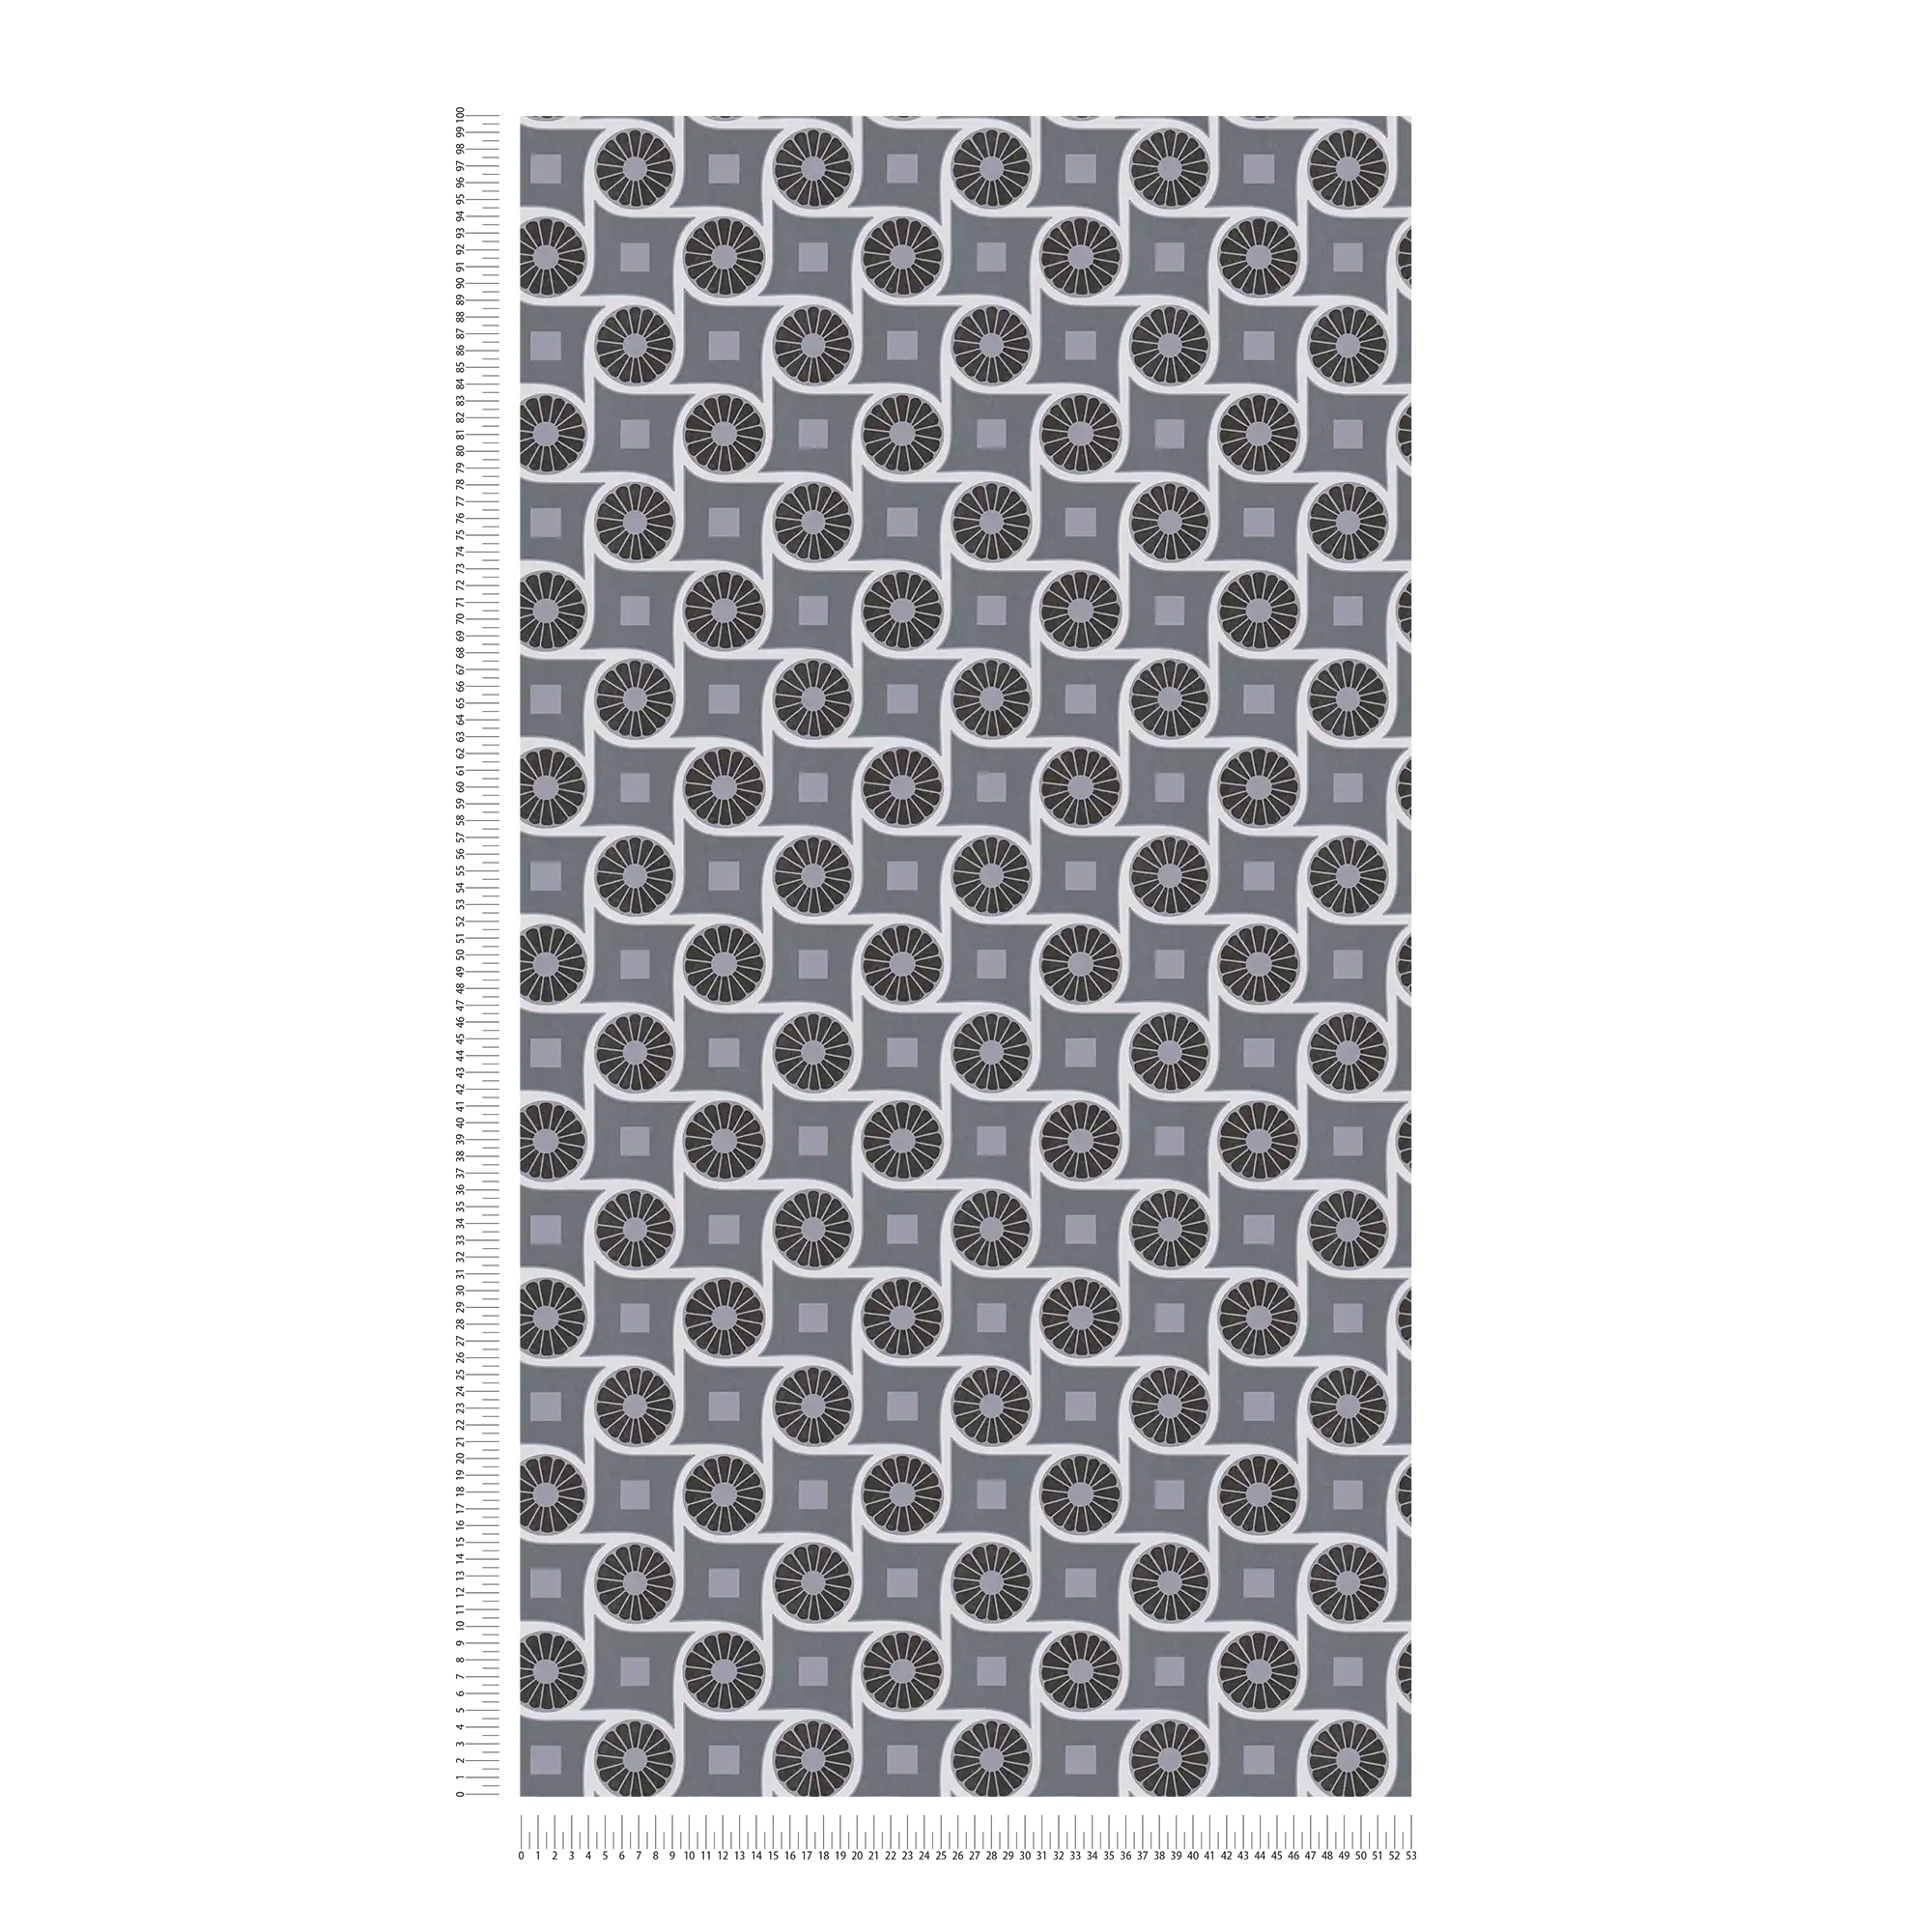             Papier peint style rétro avec motifs circulaires et carrés - gris, blanc, noir
        